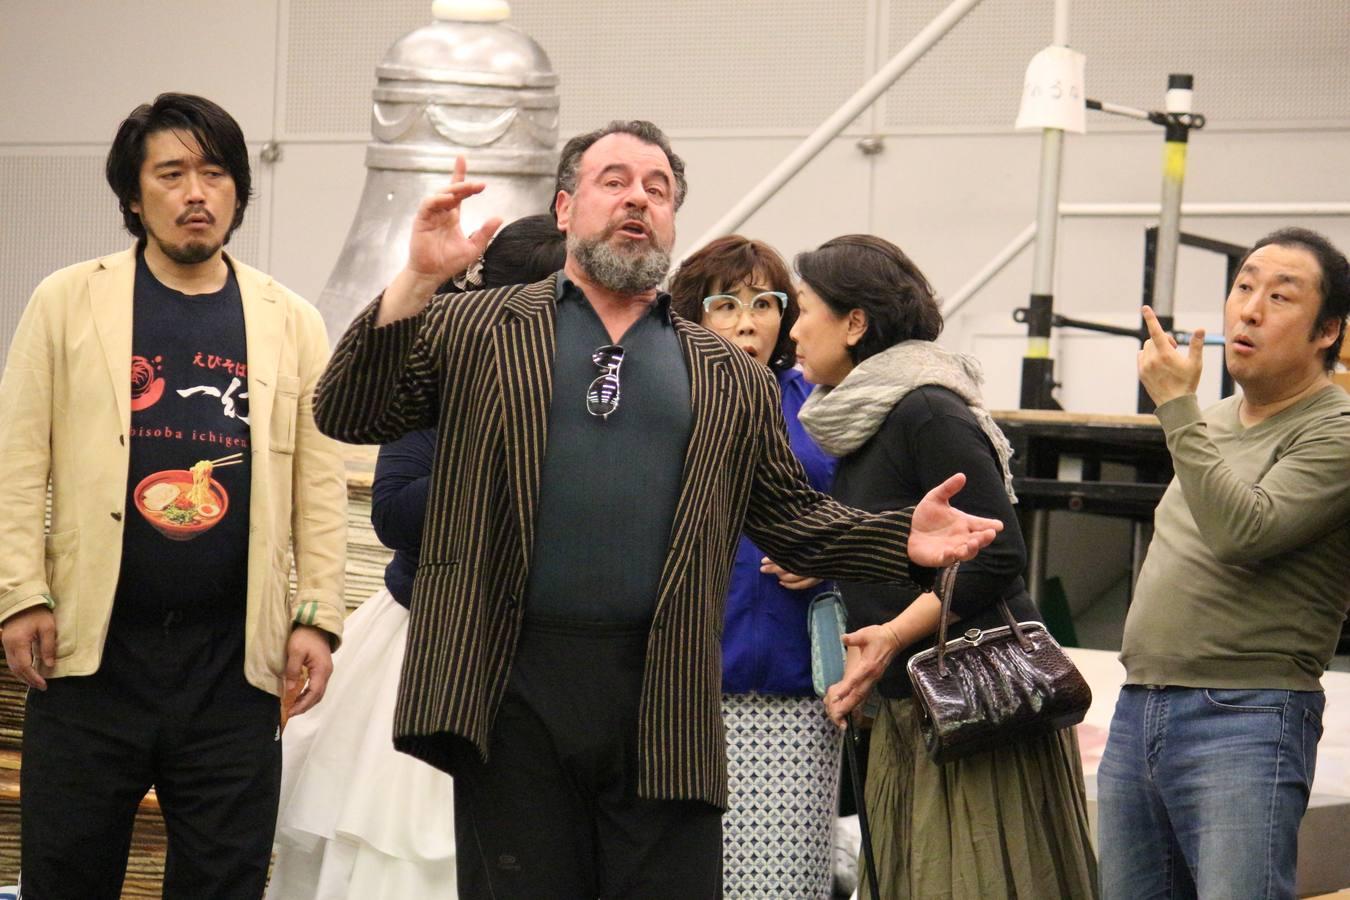 El barítono malagueño debuta como 'Gianni Schicchi' en el principal teatro de Japón. En su 30 aniversario en las tablas, vive una «segunda juventud» con nuevos retos interpretativos